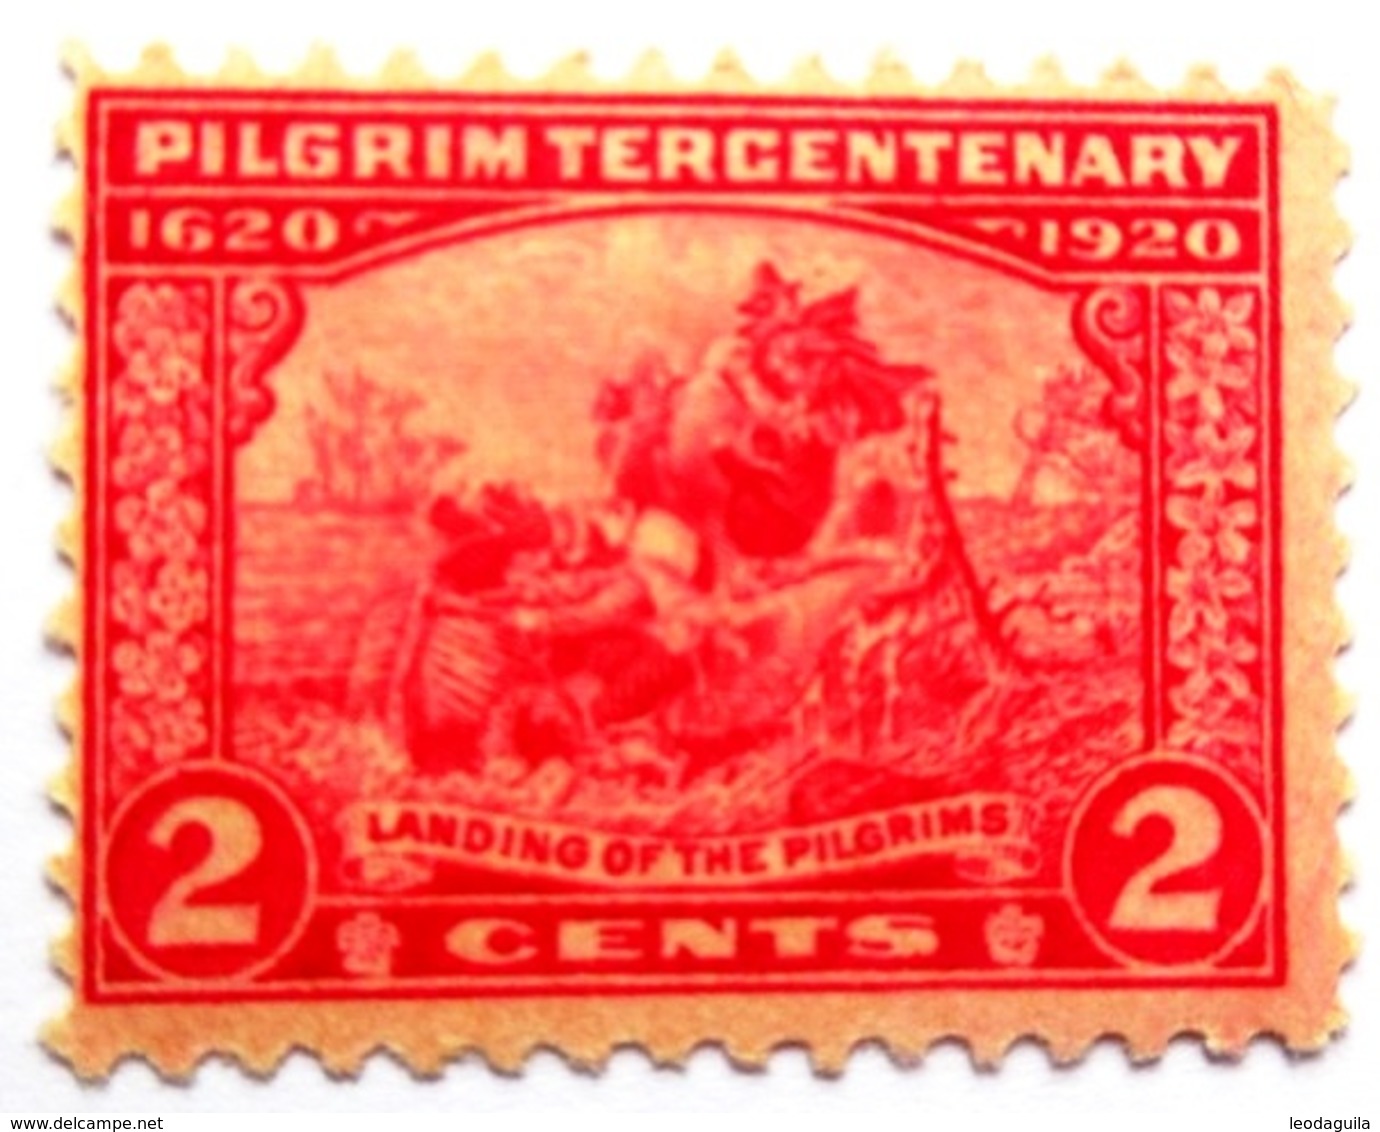 USA # 549 -  PILGRIM TERCENTENARY  -  LANDING OF THE PILGRIMS  2c  - 1920 - Unused Stamps